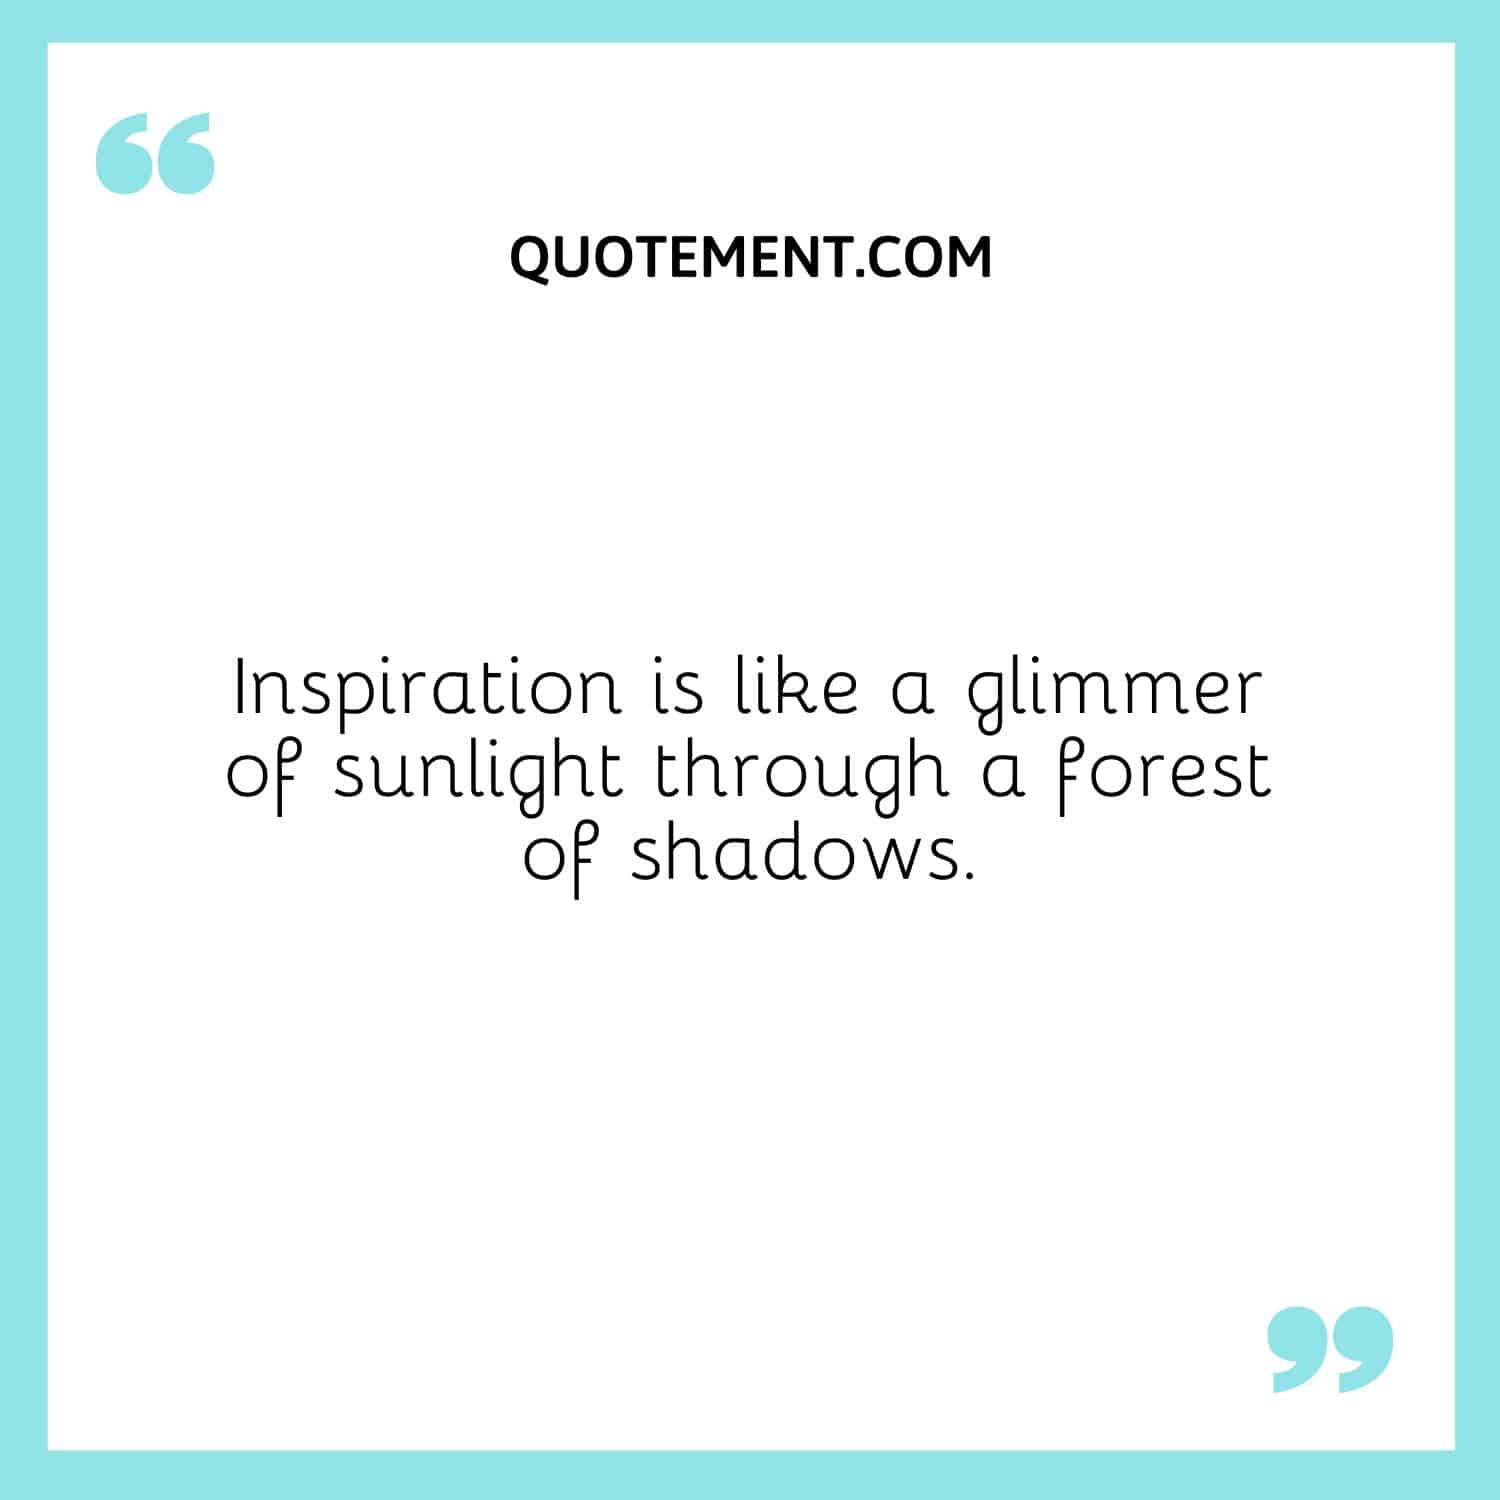 La inspiración es como un rayo de sol en un bosque de sombras.